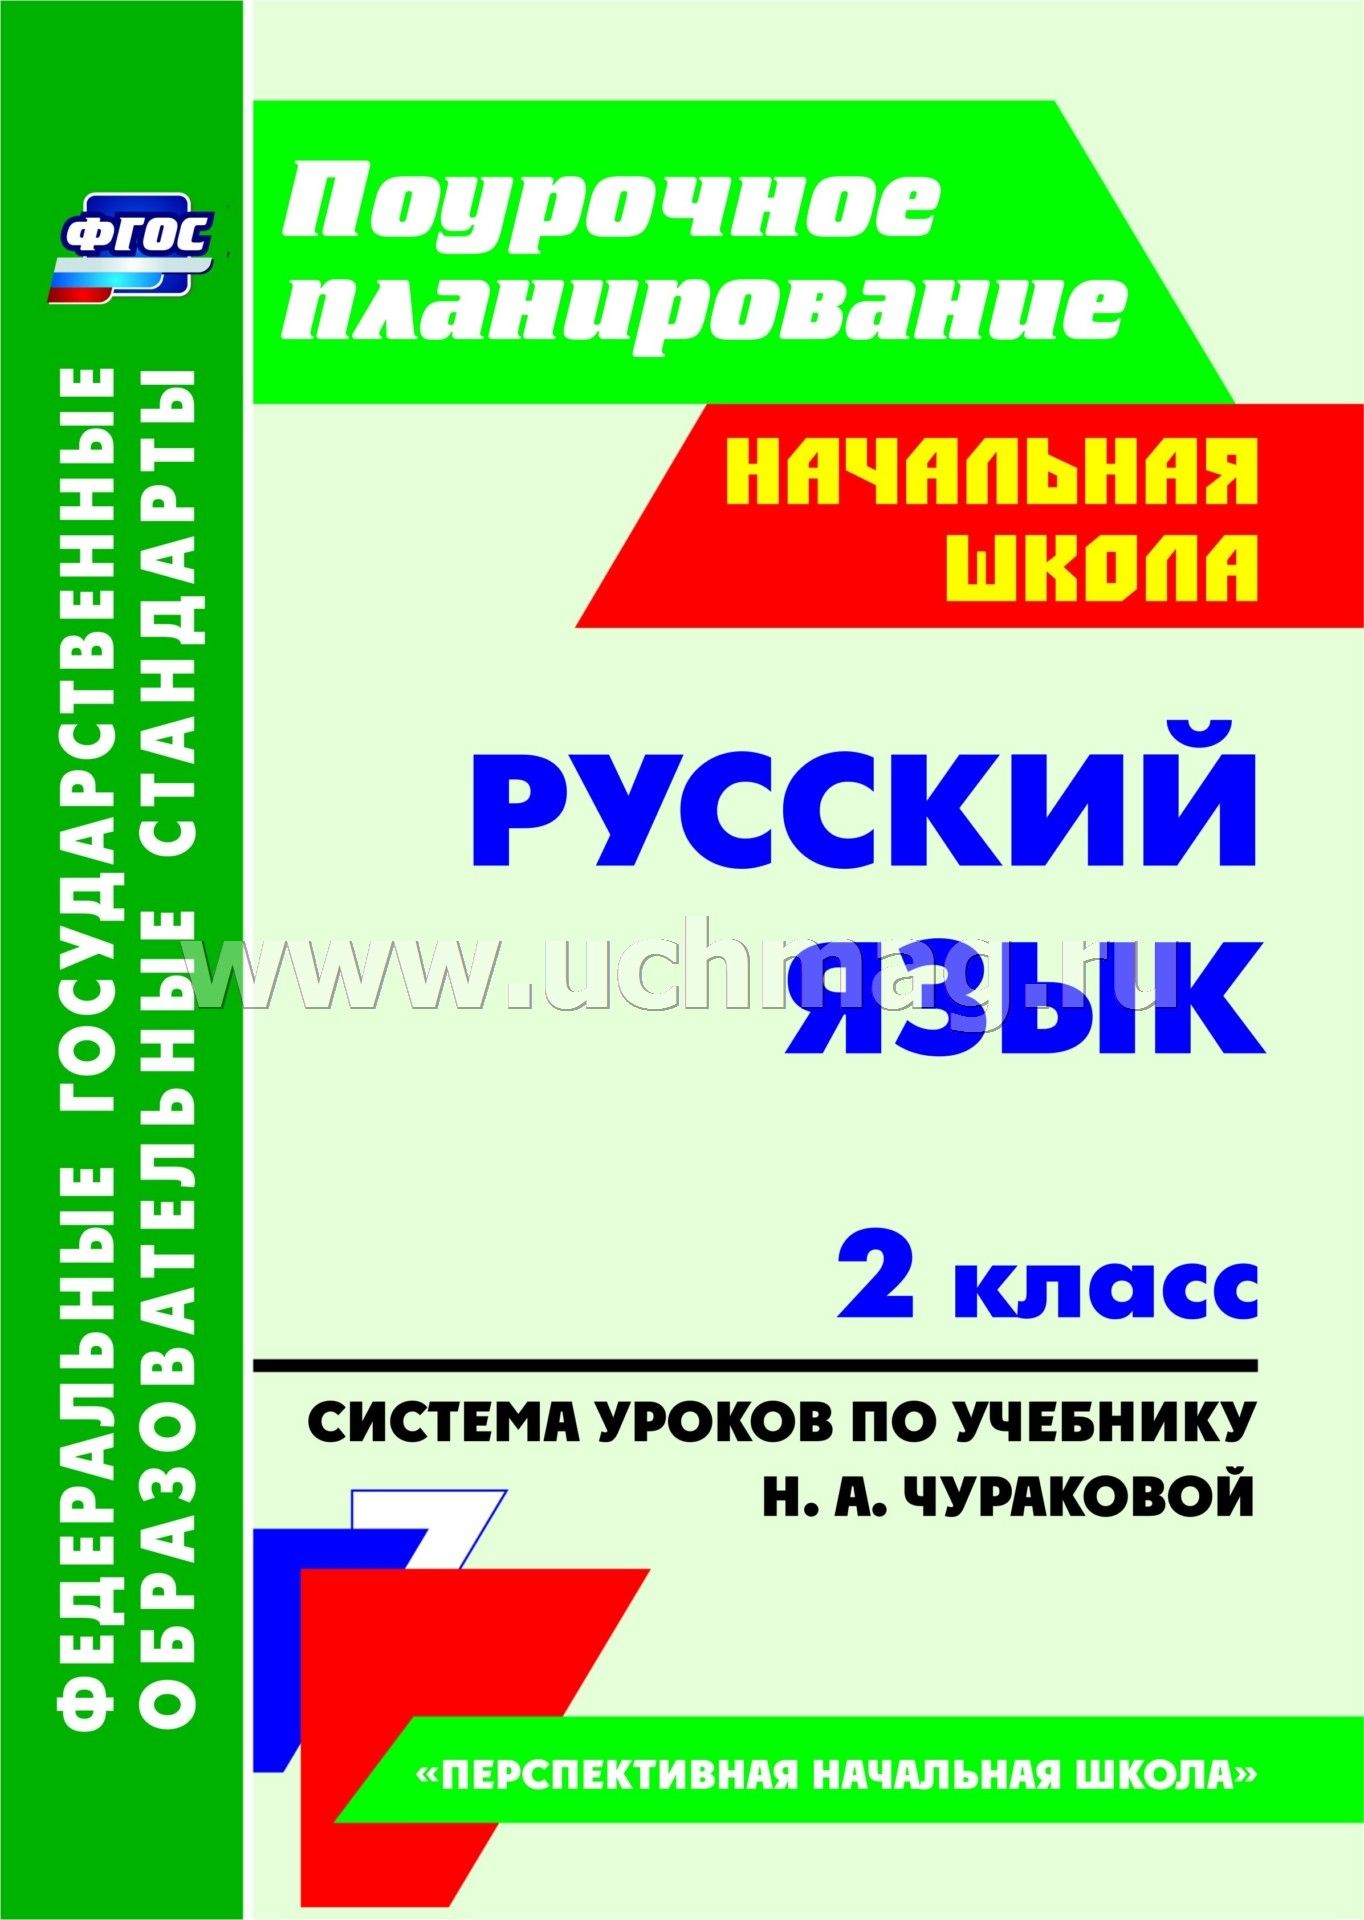 Карточки с заданиями по русскому языку 2 класс по пнш